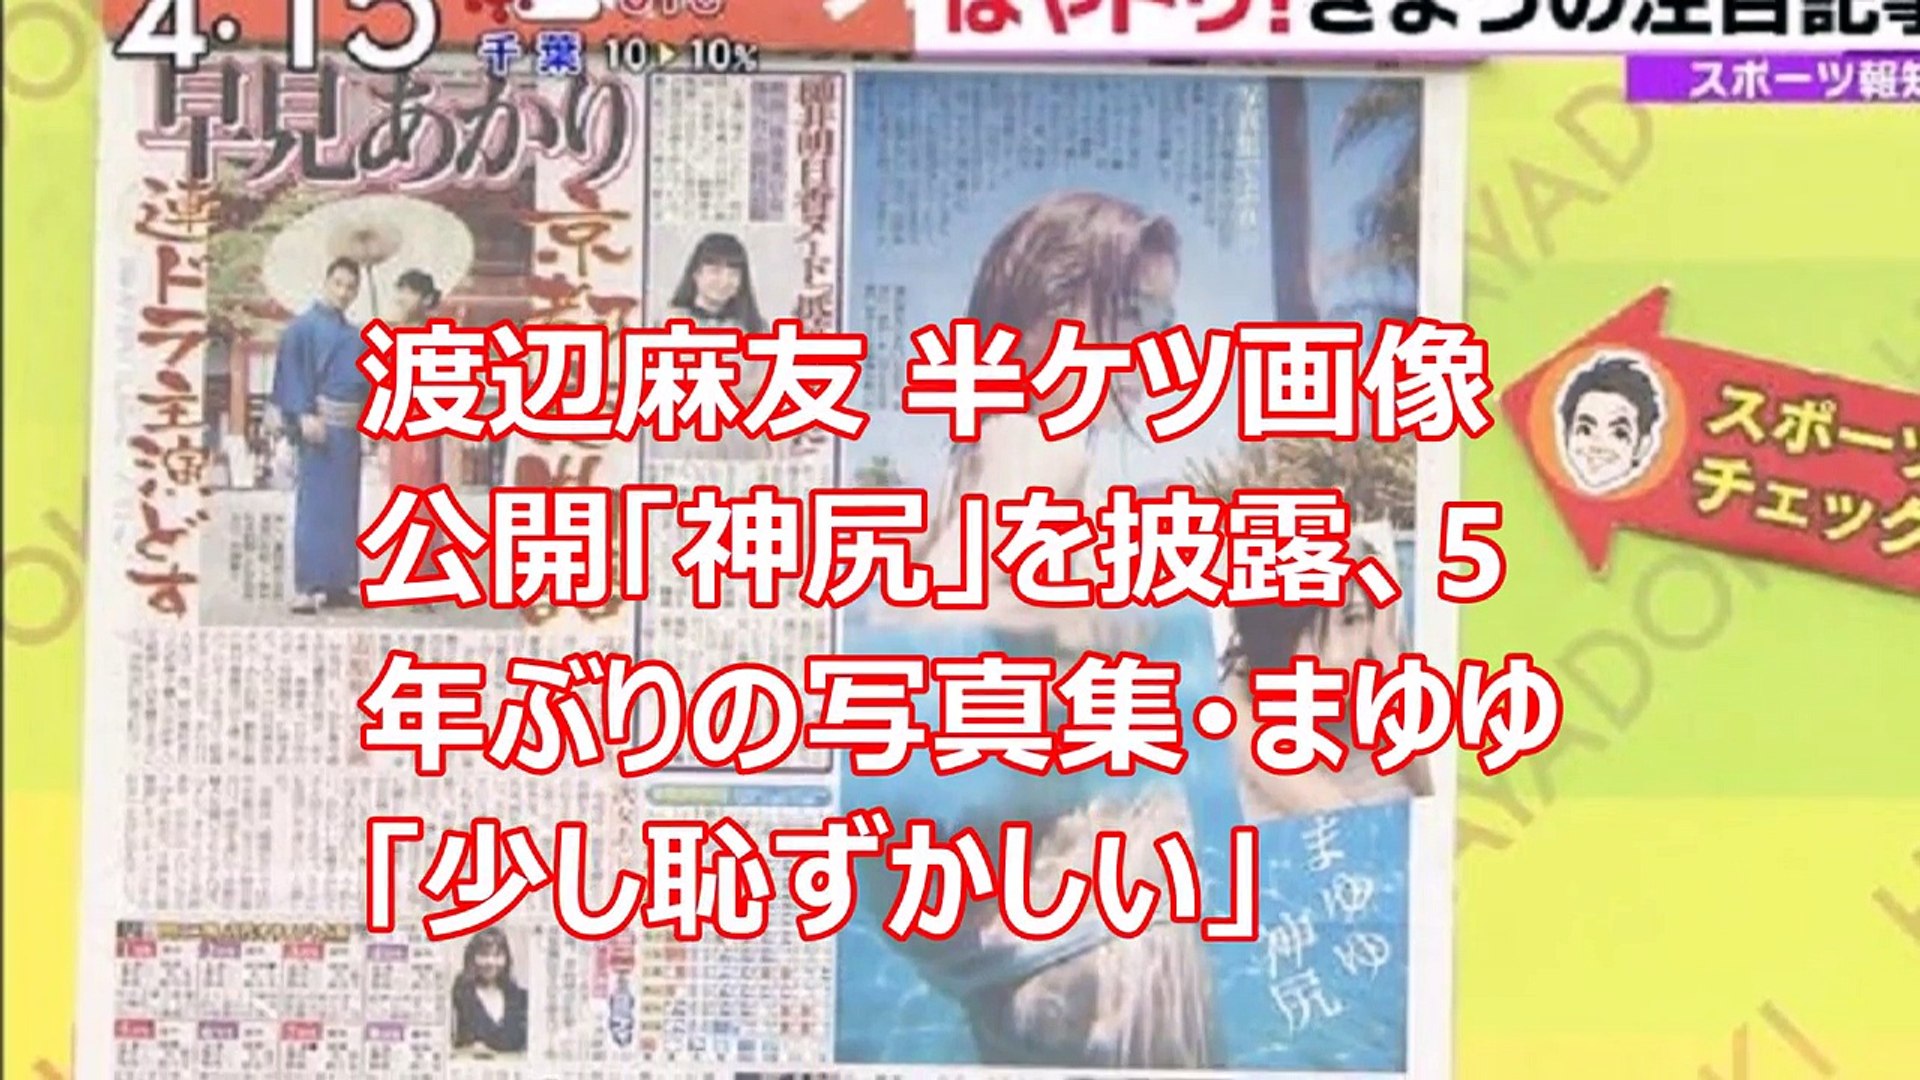 渡辺麻友 半ケツ画像公開 神尻 を披露 5年ぶりの写真集 まゆゆ 少し恥ずかしい Video Dailymotion